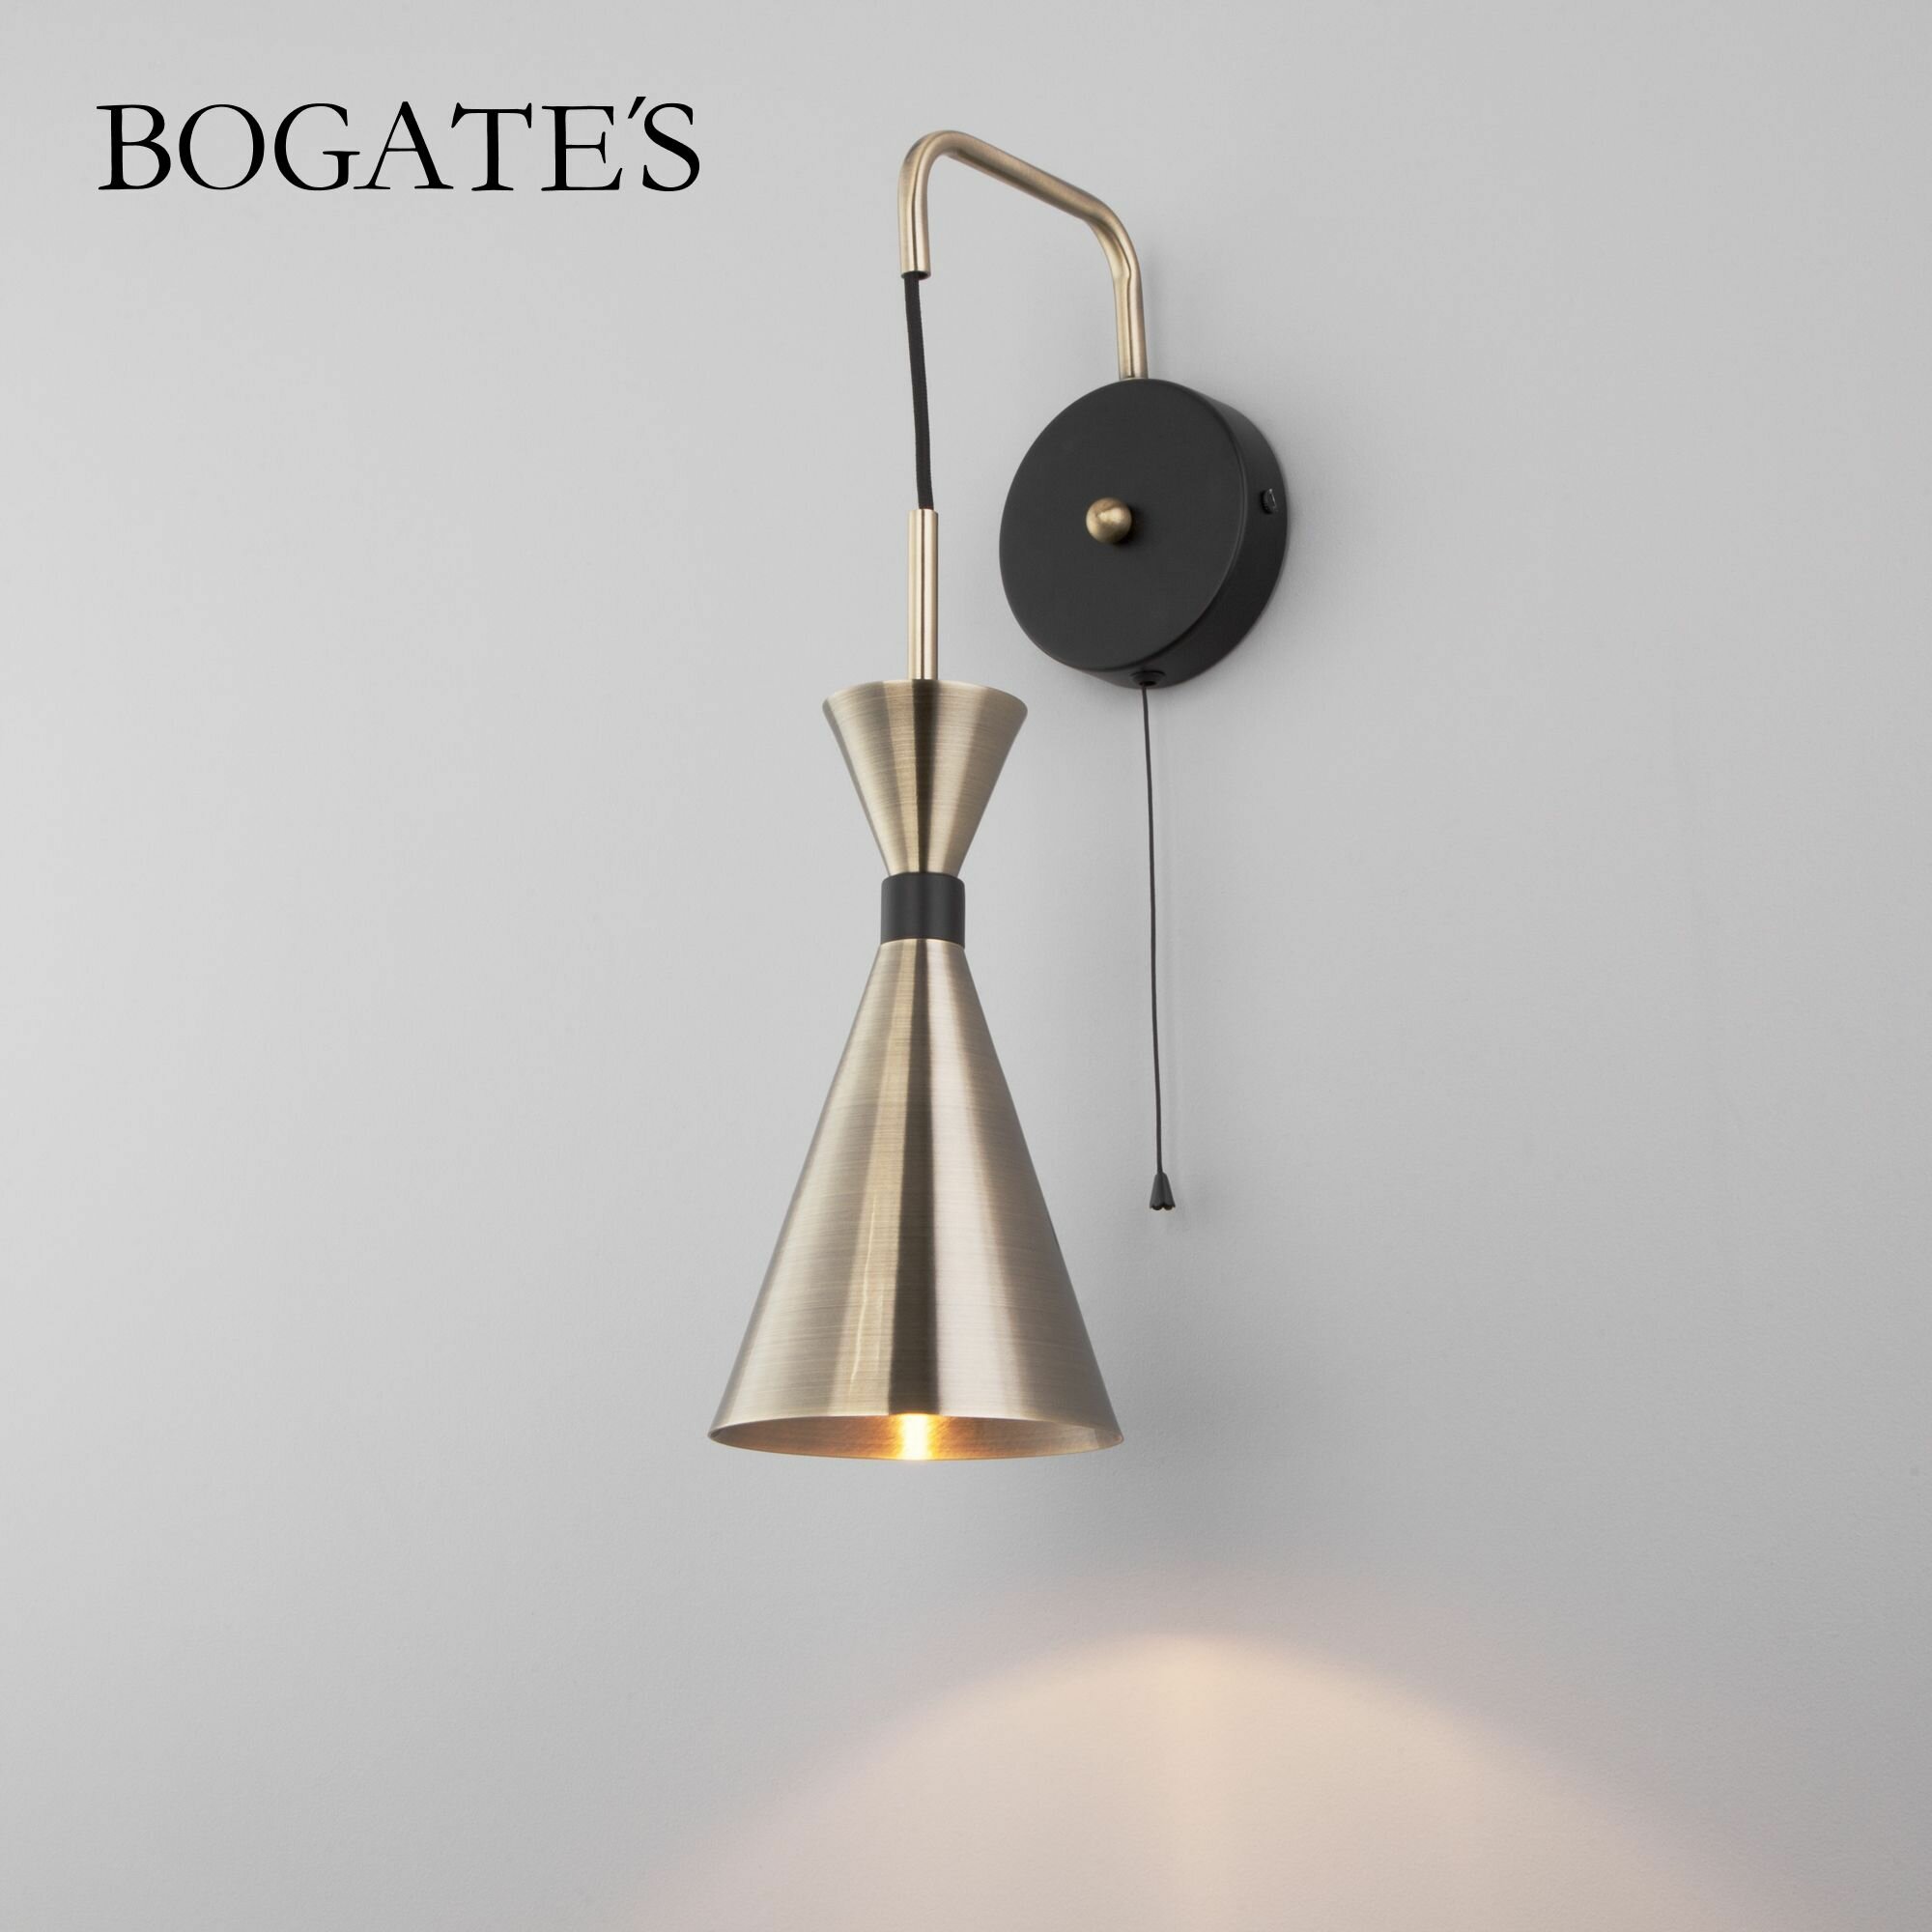 Бра / Настенный светильник Bogate's Glustin 316/1, цвет черный / латунь